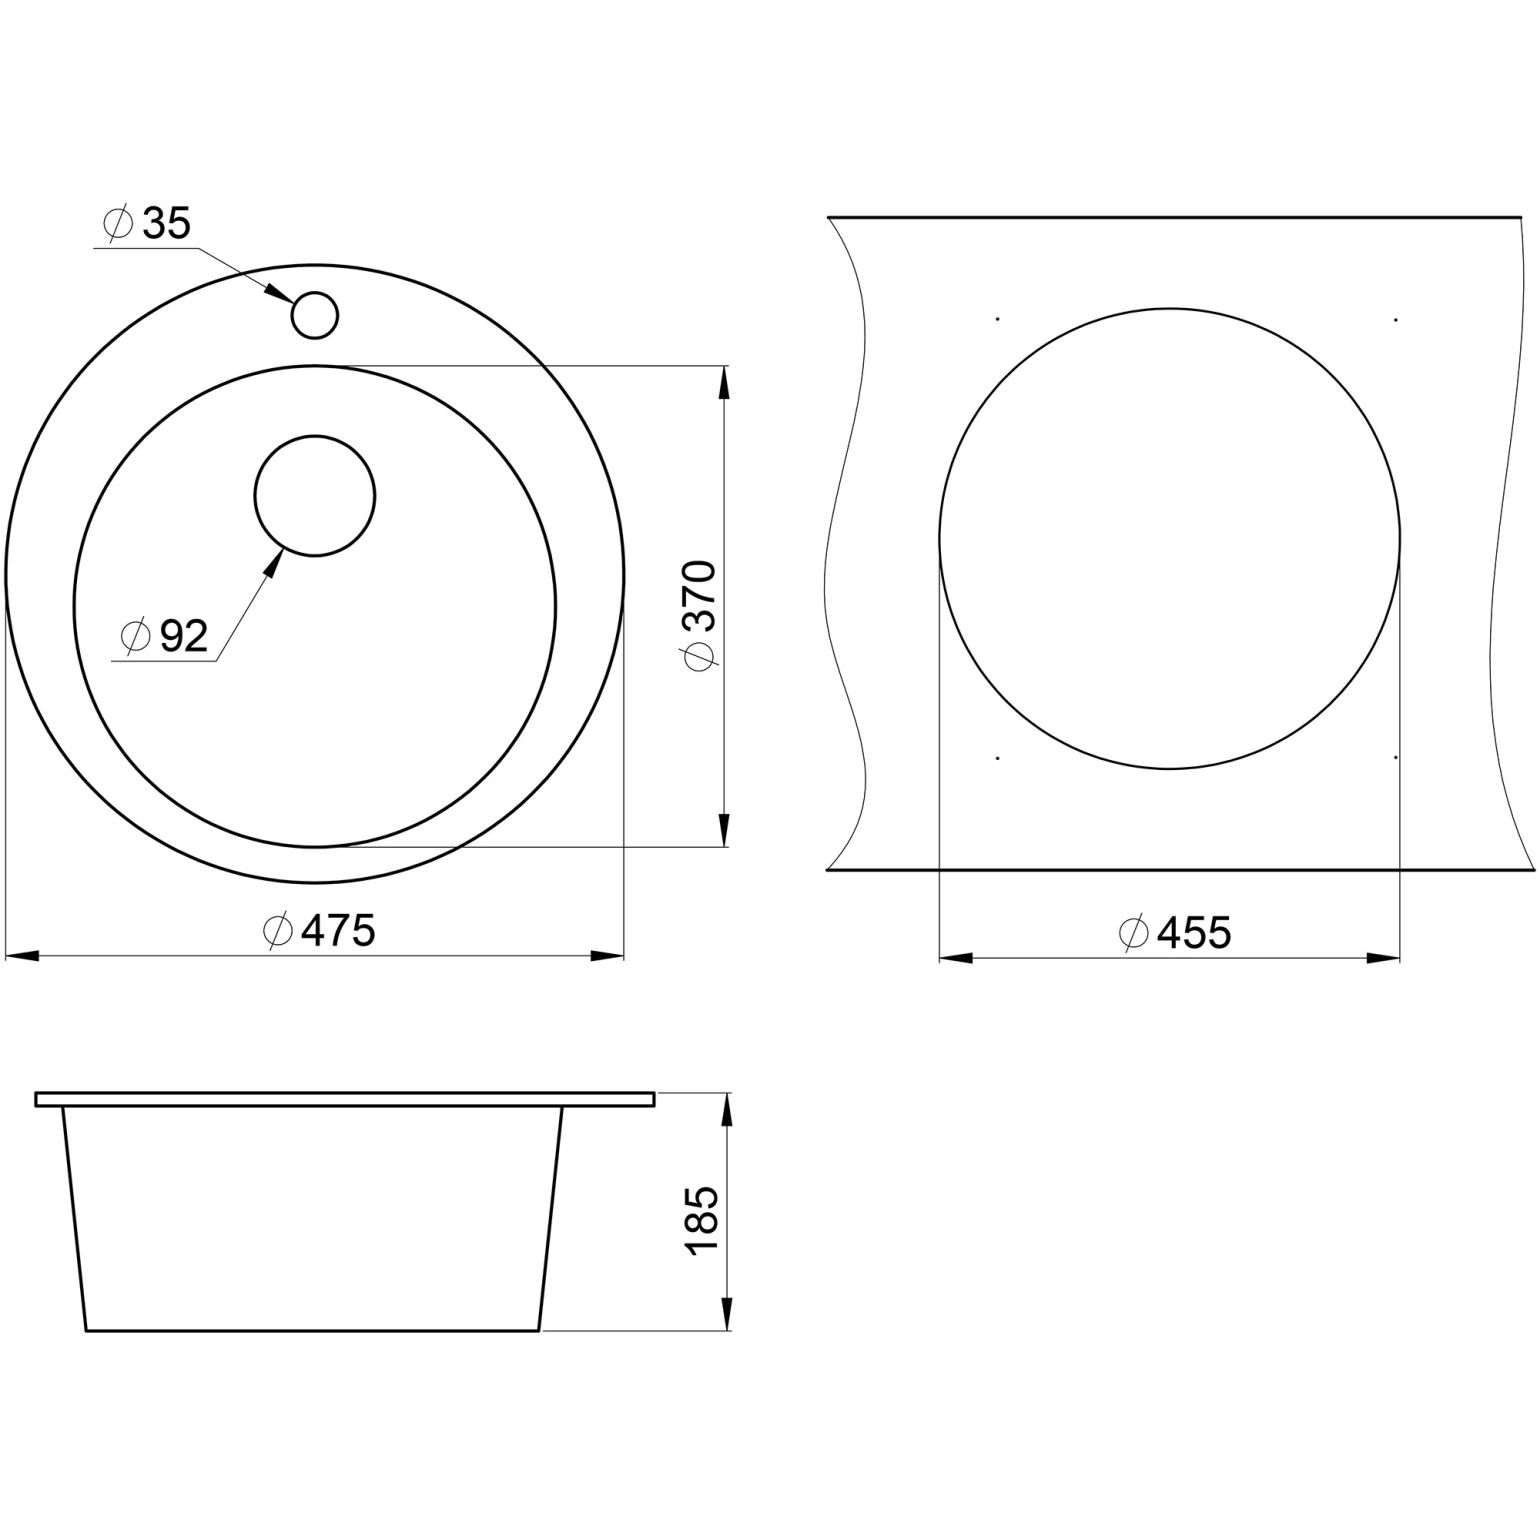 Кухонная мойка кварцевая Granula GR-4801 односекционная круглая, врезная, чаша D 370, цвет арктик (4801wh)